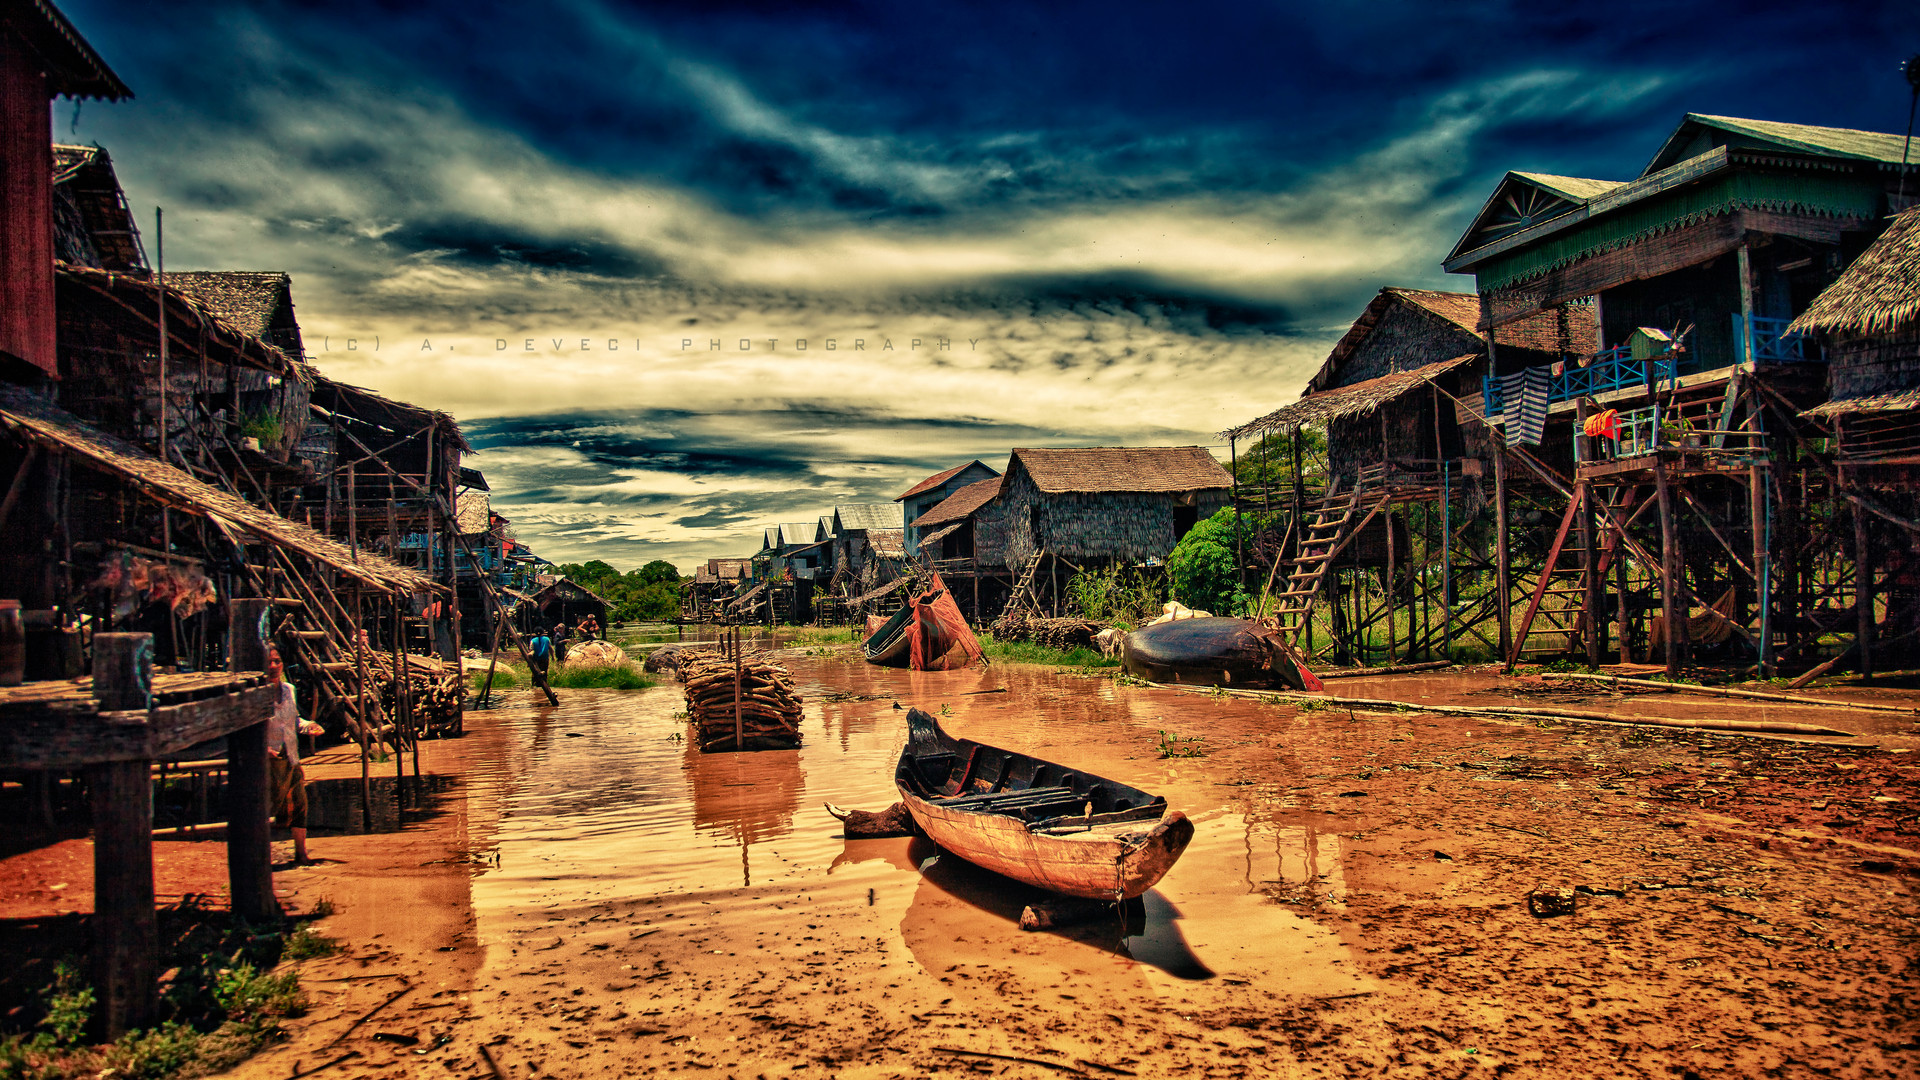 Floating village, Cambodia, 2011